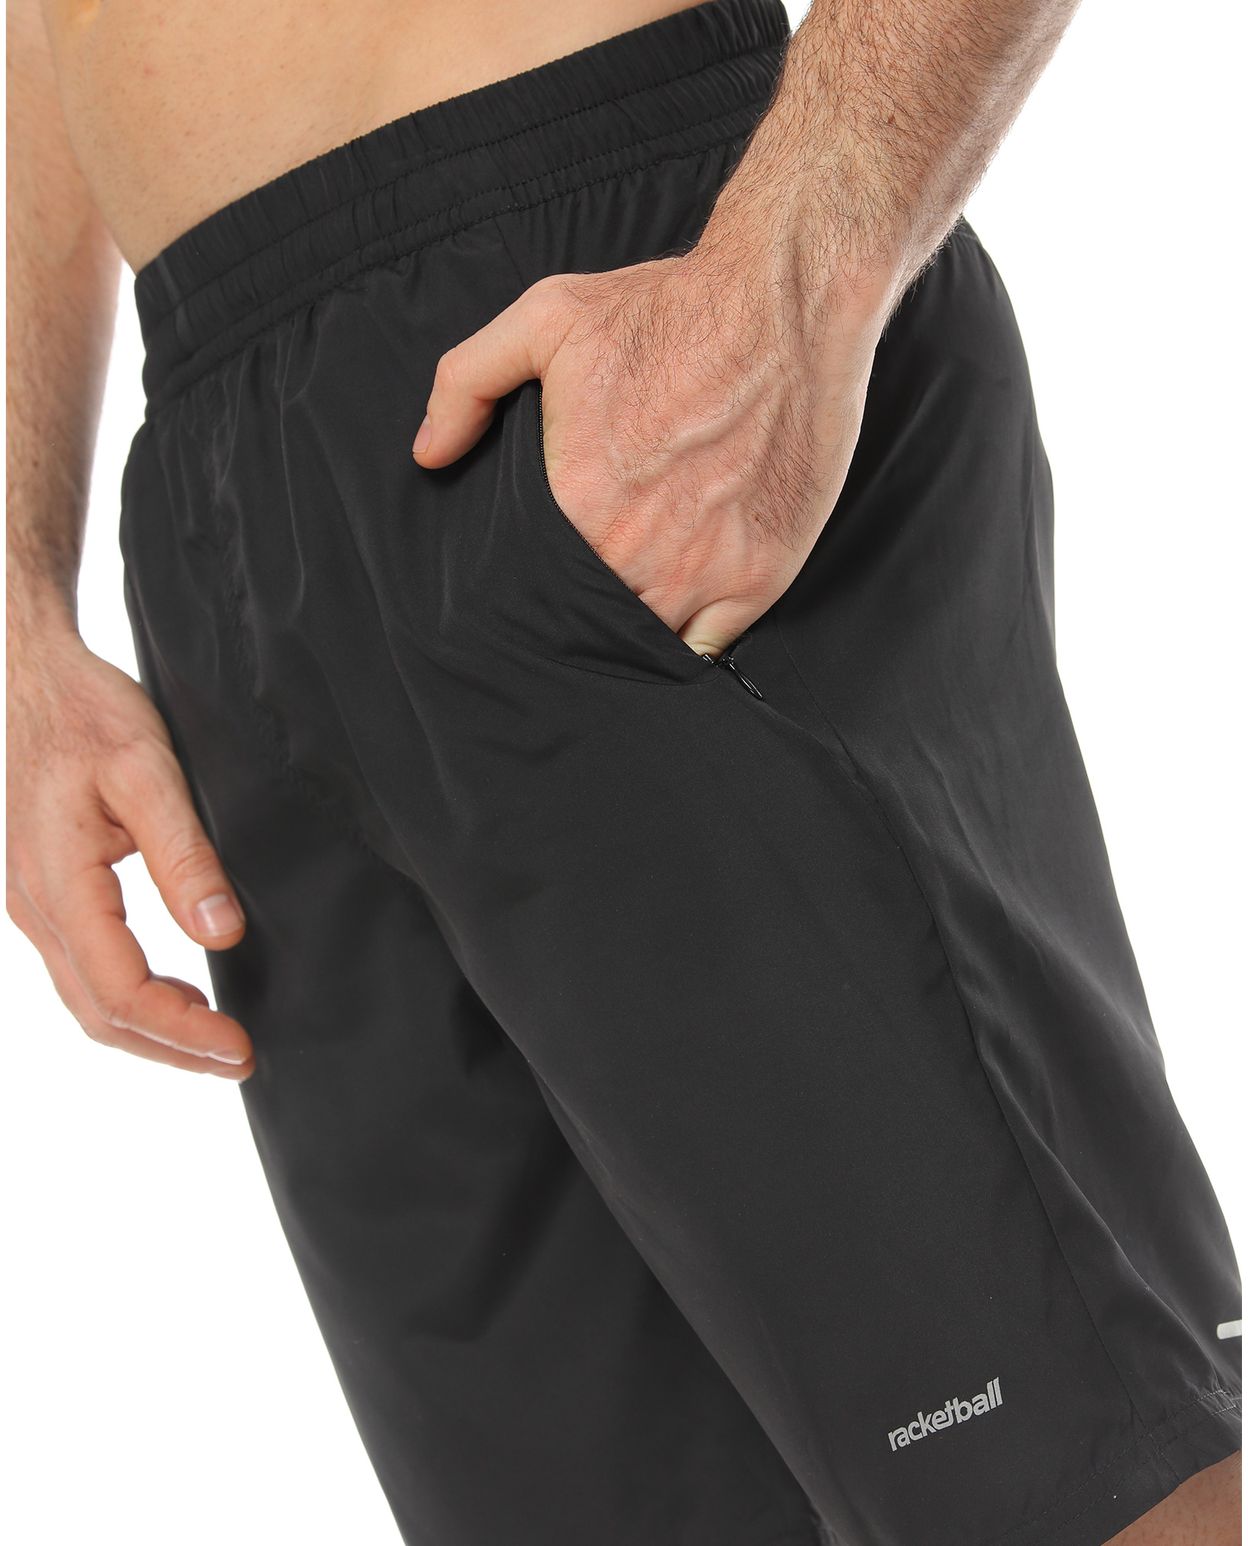 bolsillo lateral derecho pantaloneta deportiva color negro para hombre